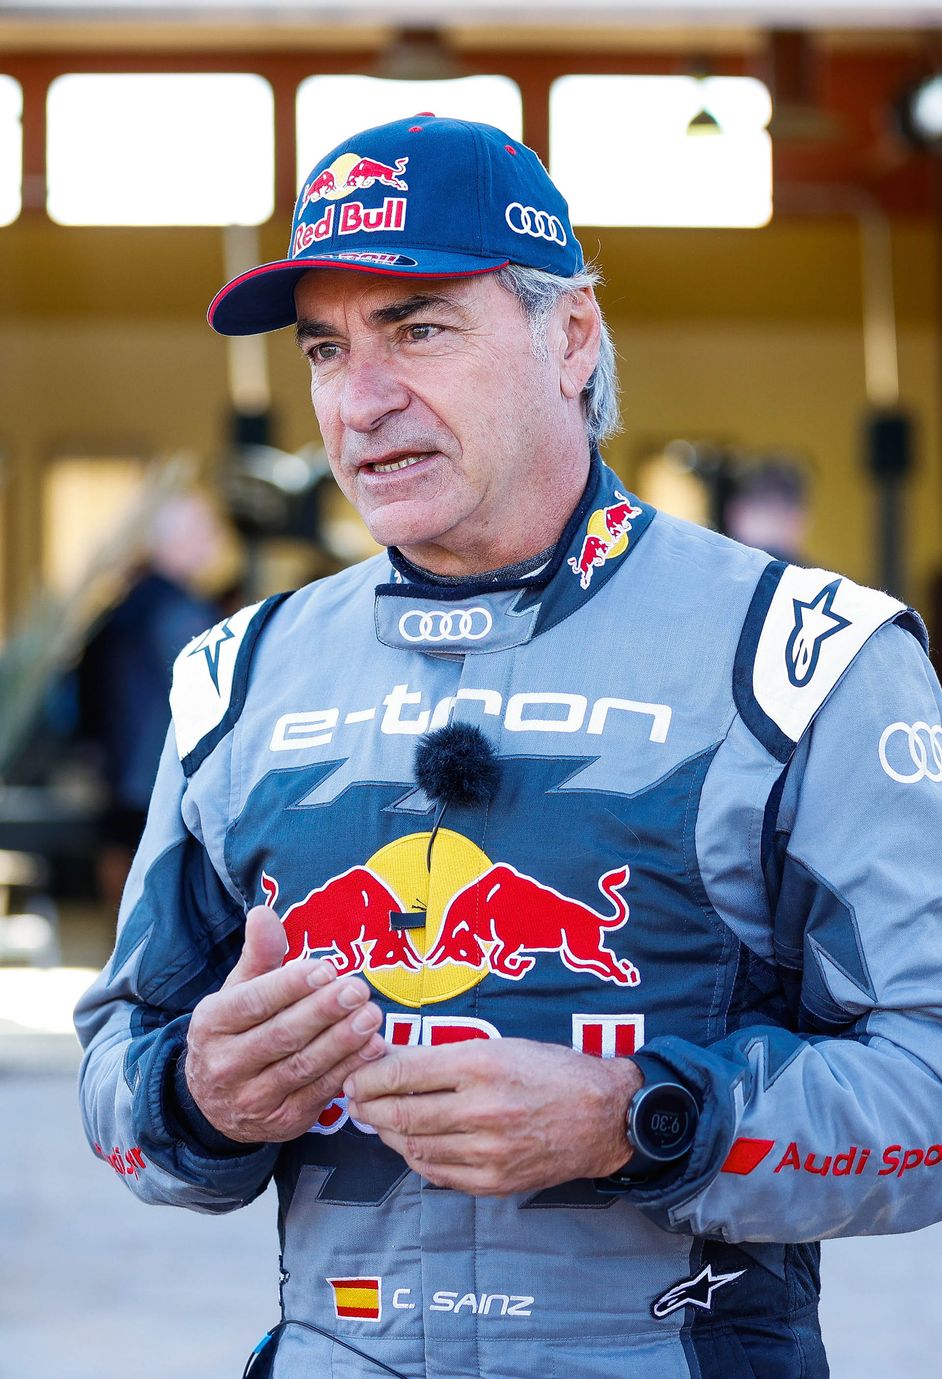 Portrait de Carlos Sainz, pilote d'usine Audi et légende du rallye